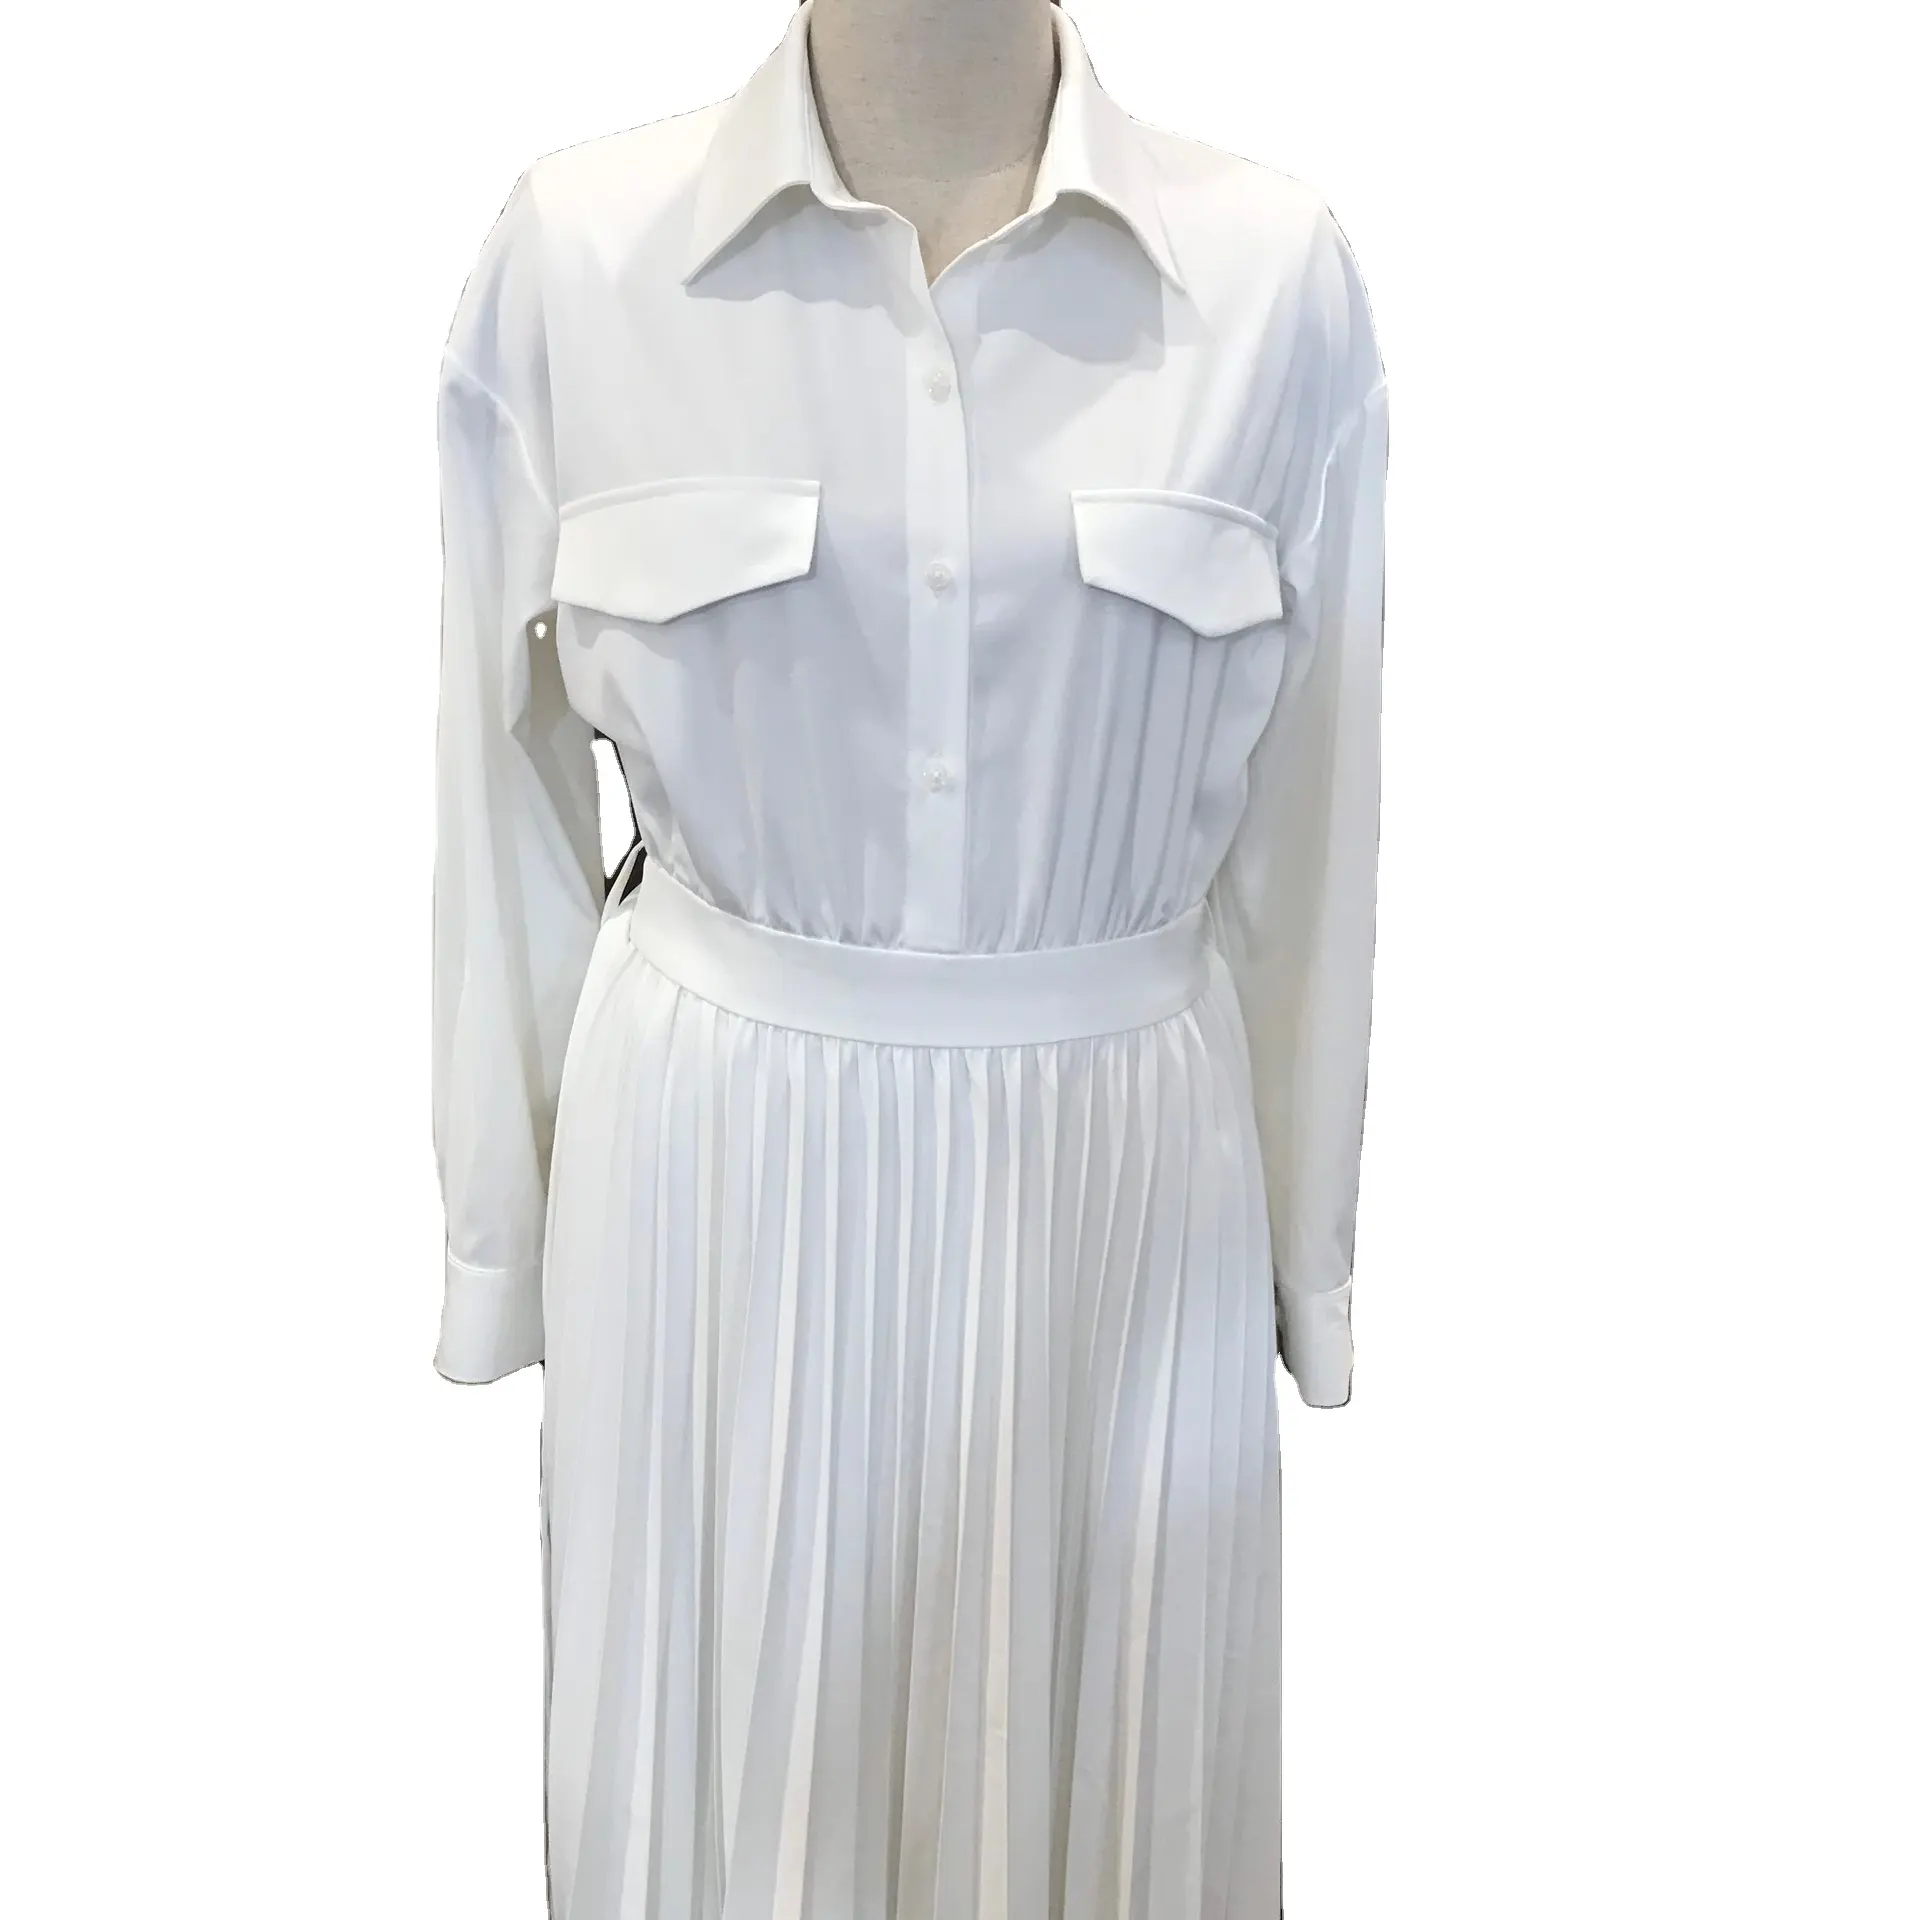 سعر الجملة مادة ممتازة فستان طويل قميص المرأة مكتب أزياء السيدات الأبيض قميص اللباس